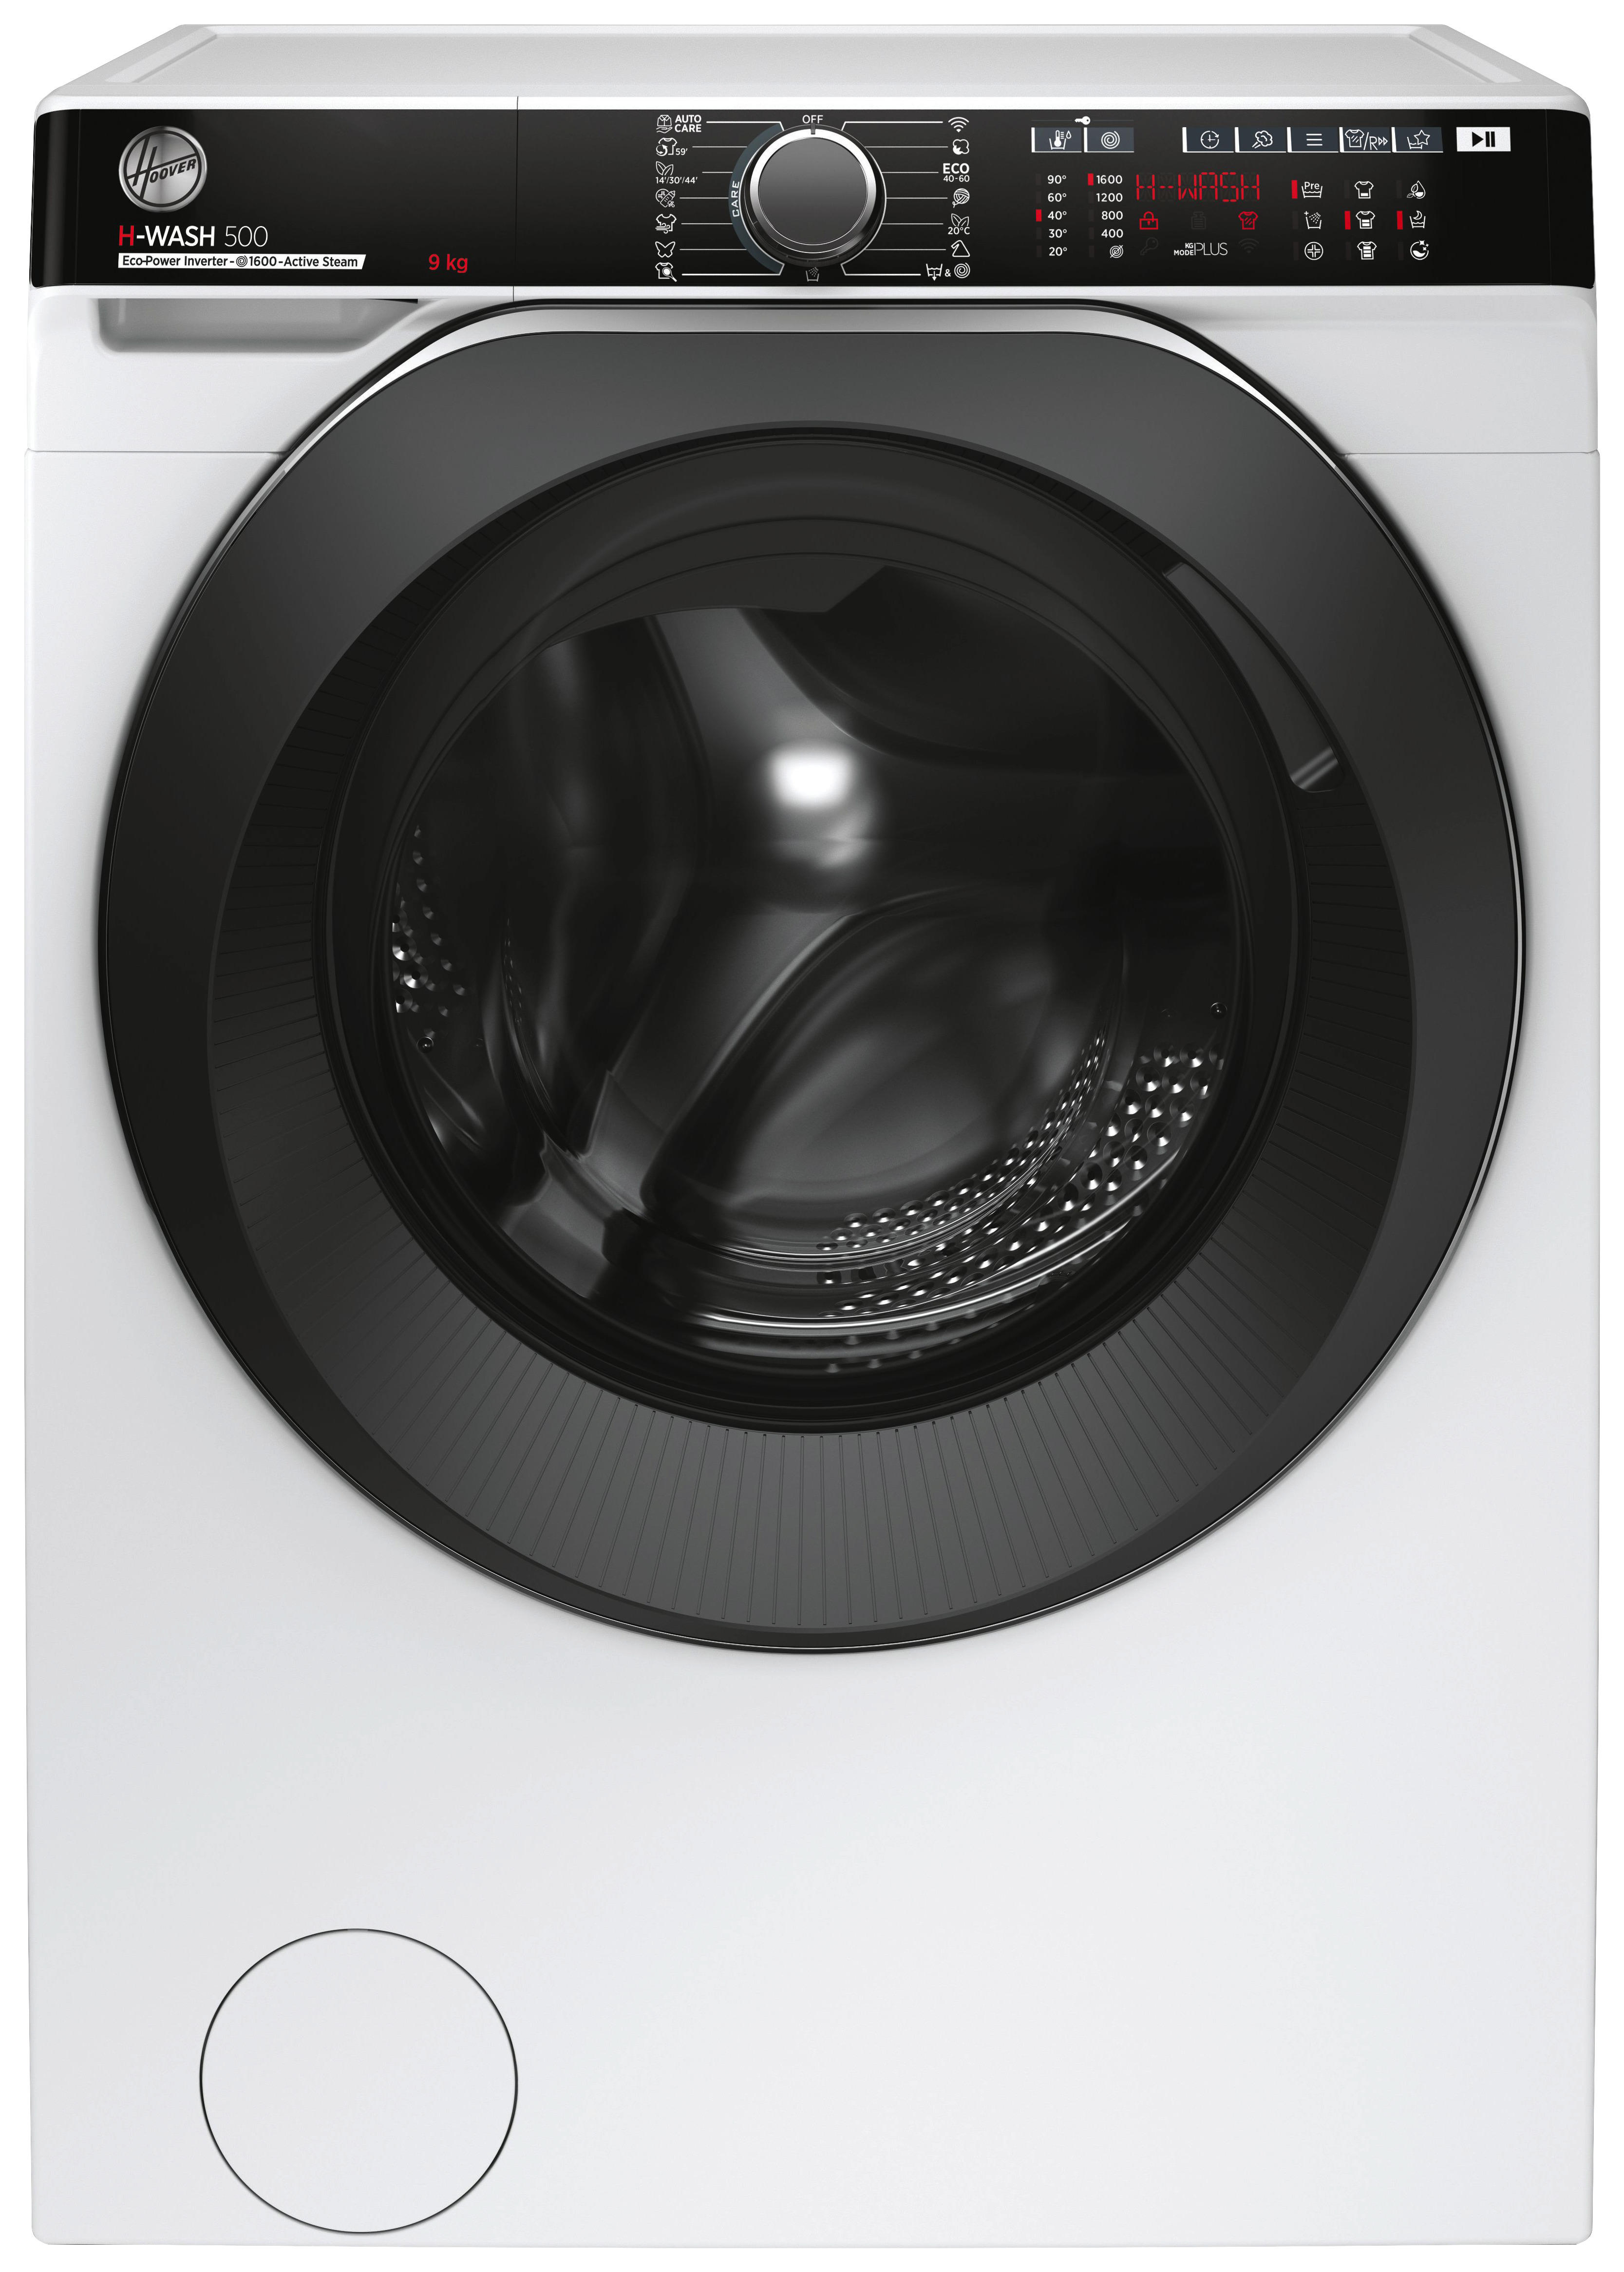 Günstig waschmaschine kaufen - Der absolute Favorit unseres Teams